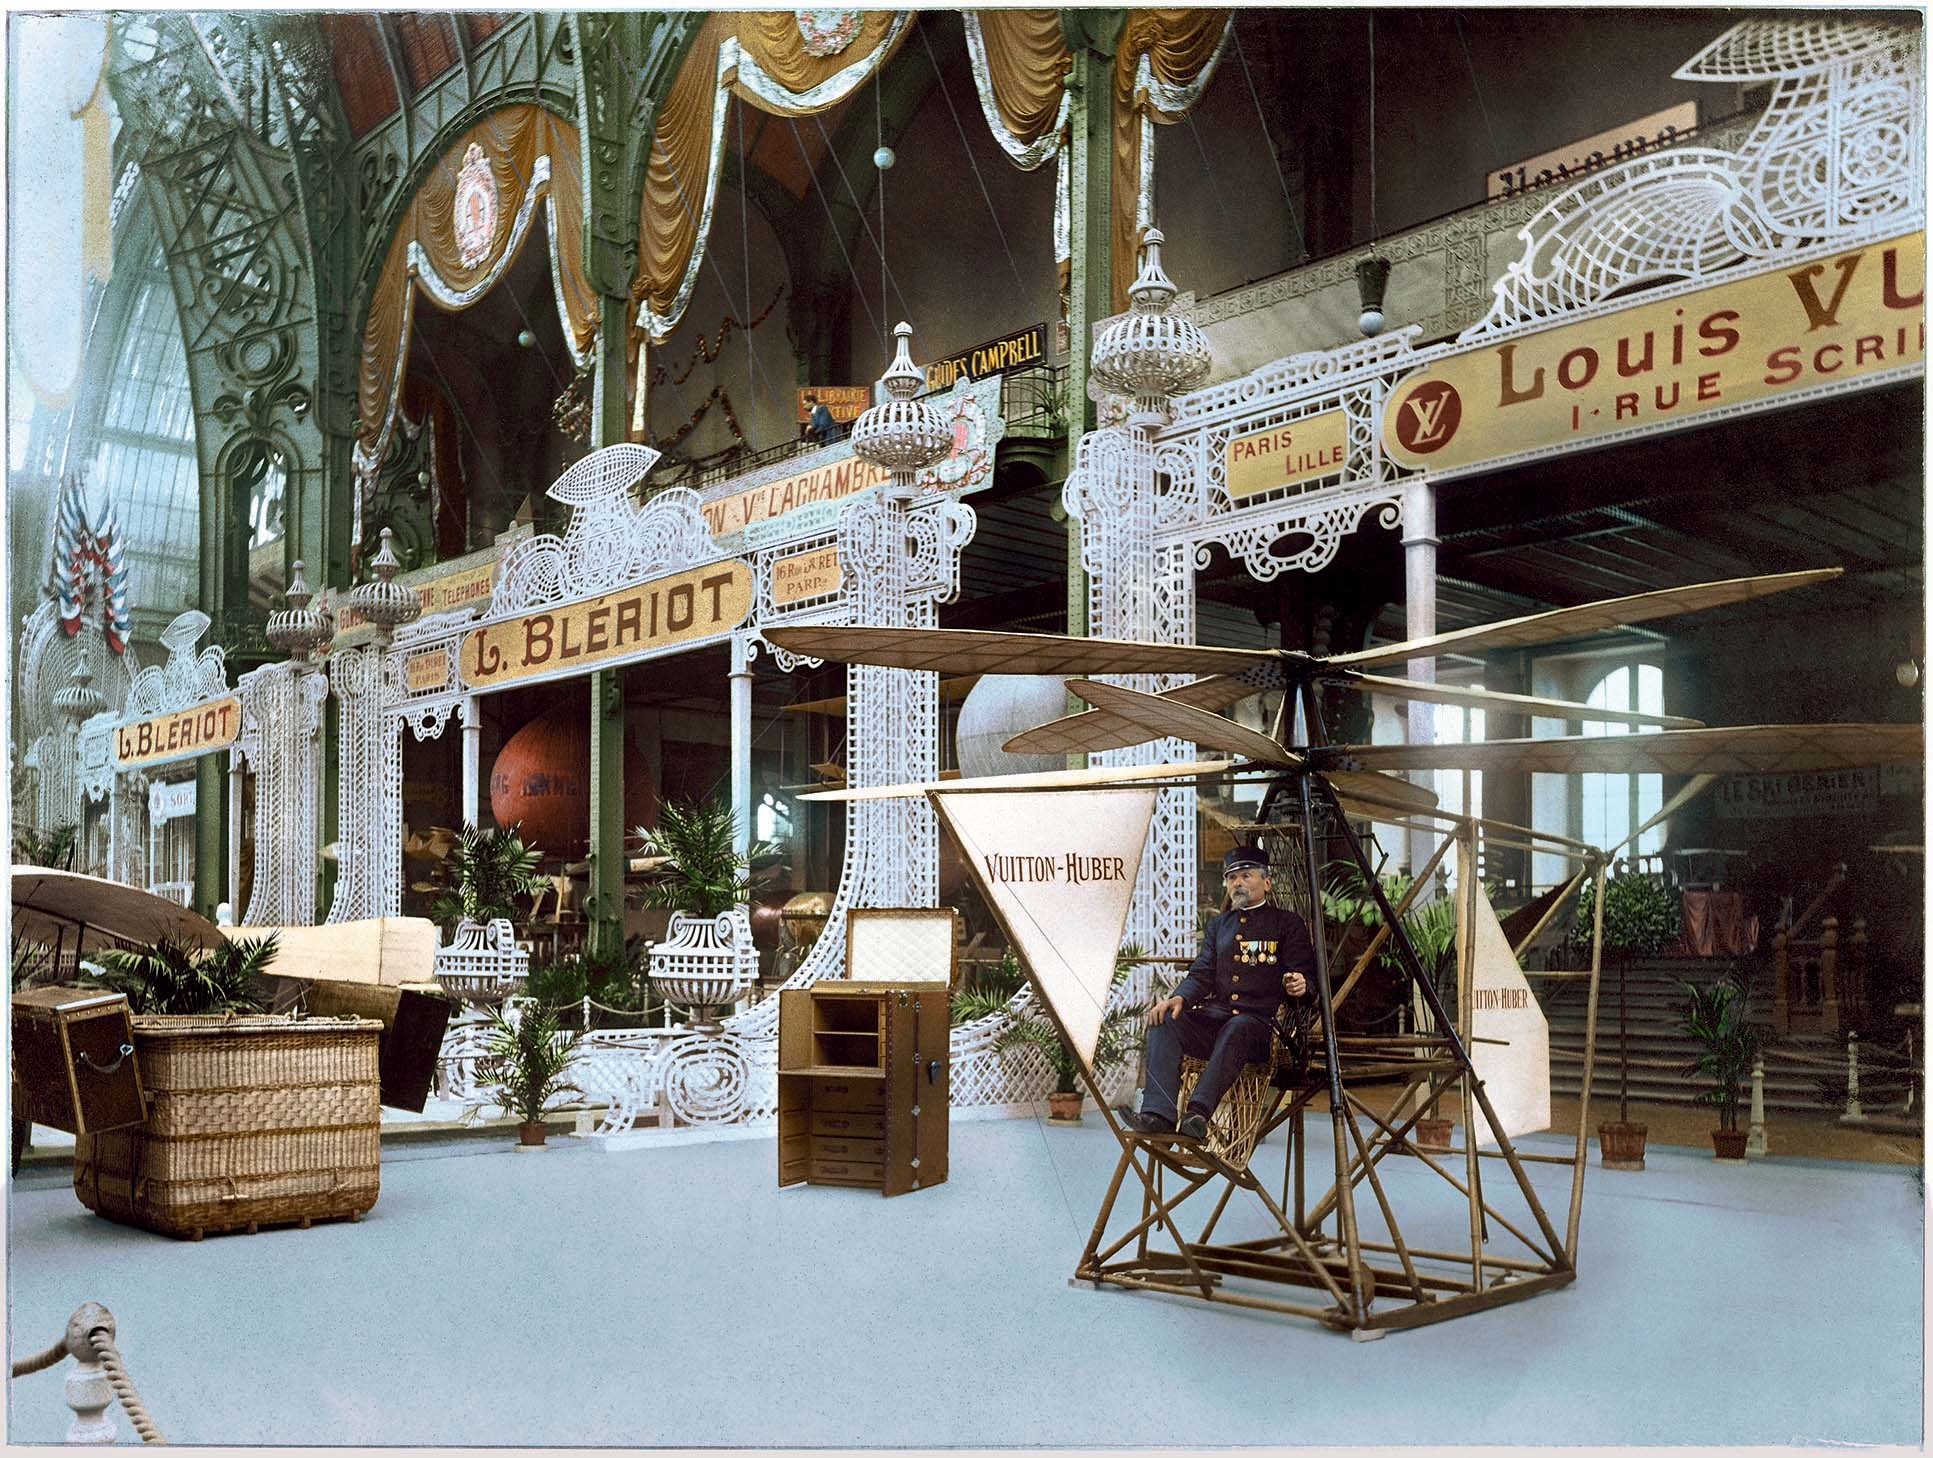 Visitors Look Exhibits Display Louis Vuitton Voyages Exhibition